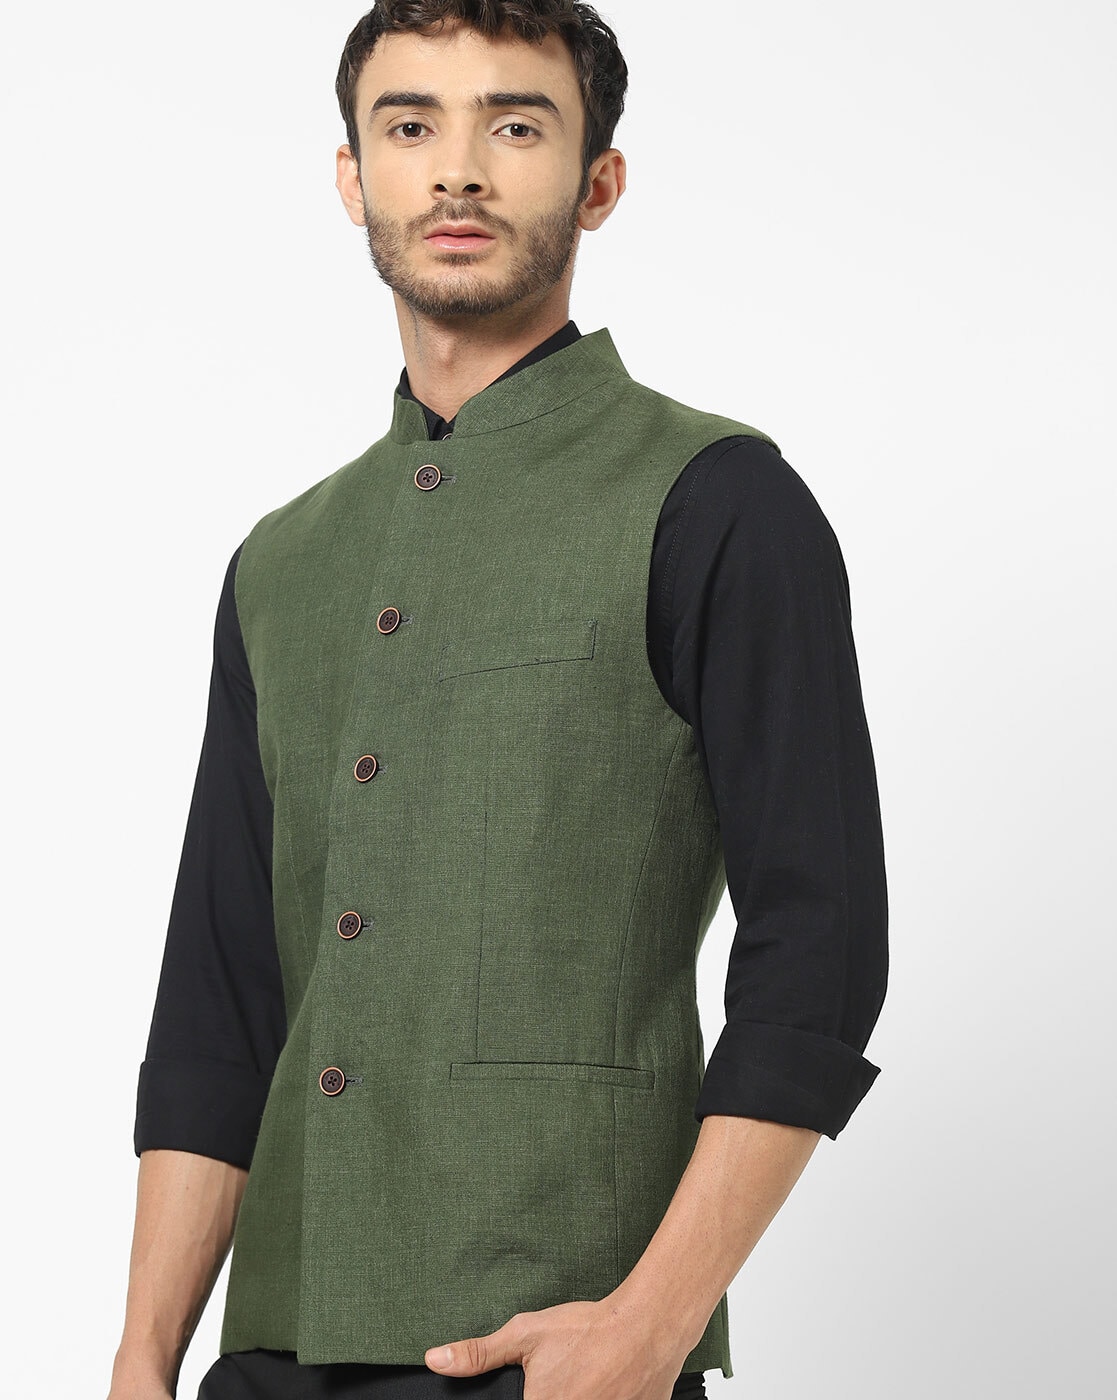 Men's Green Woven Design Nehru Jacket. – Jompers